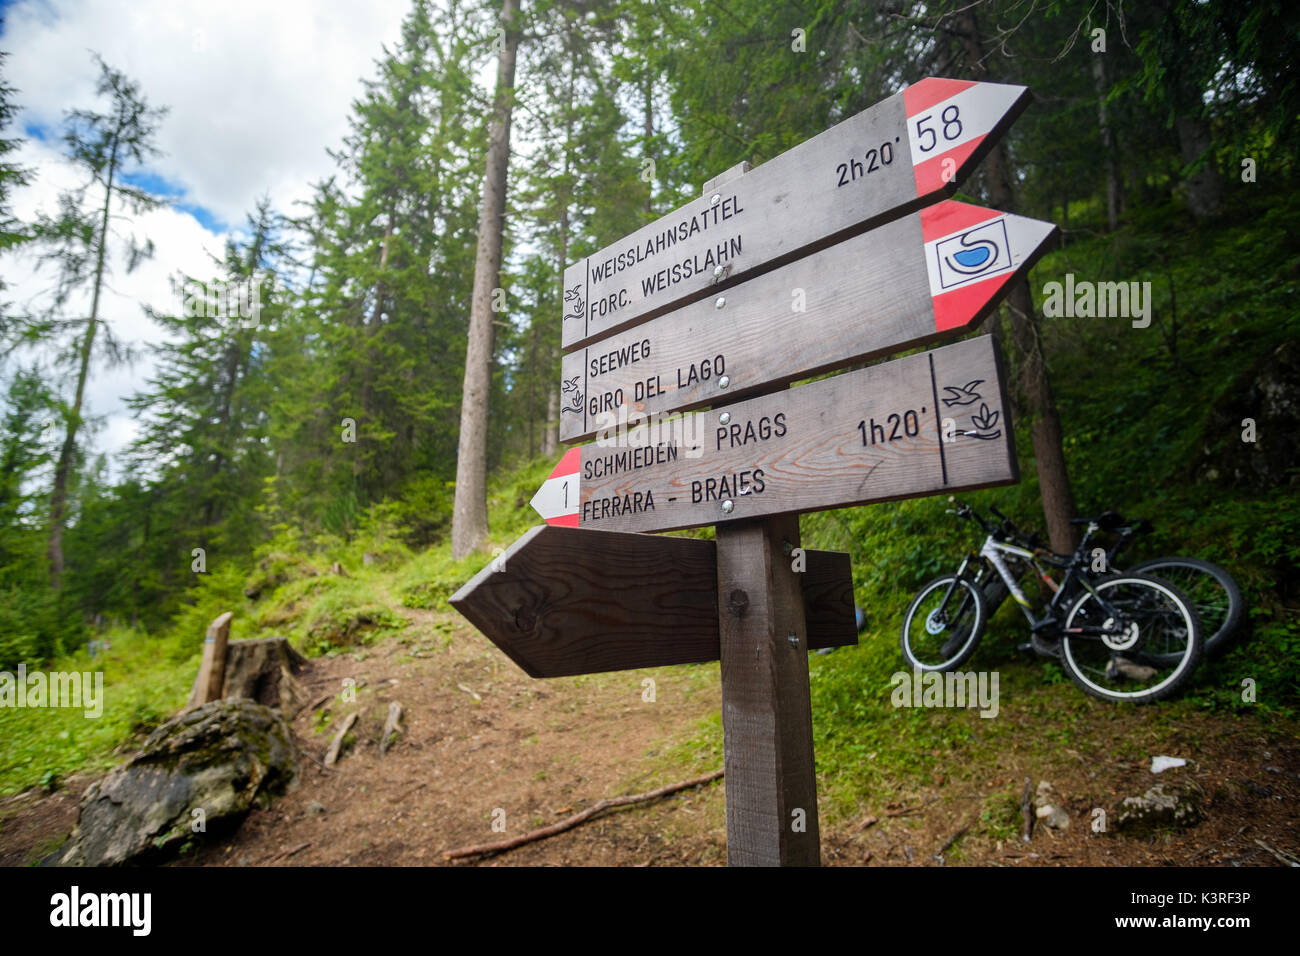 Sentieri Cai (the italian mountain trail signs) in trentino alto adige Stock Photo